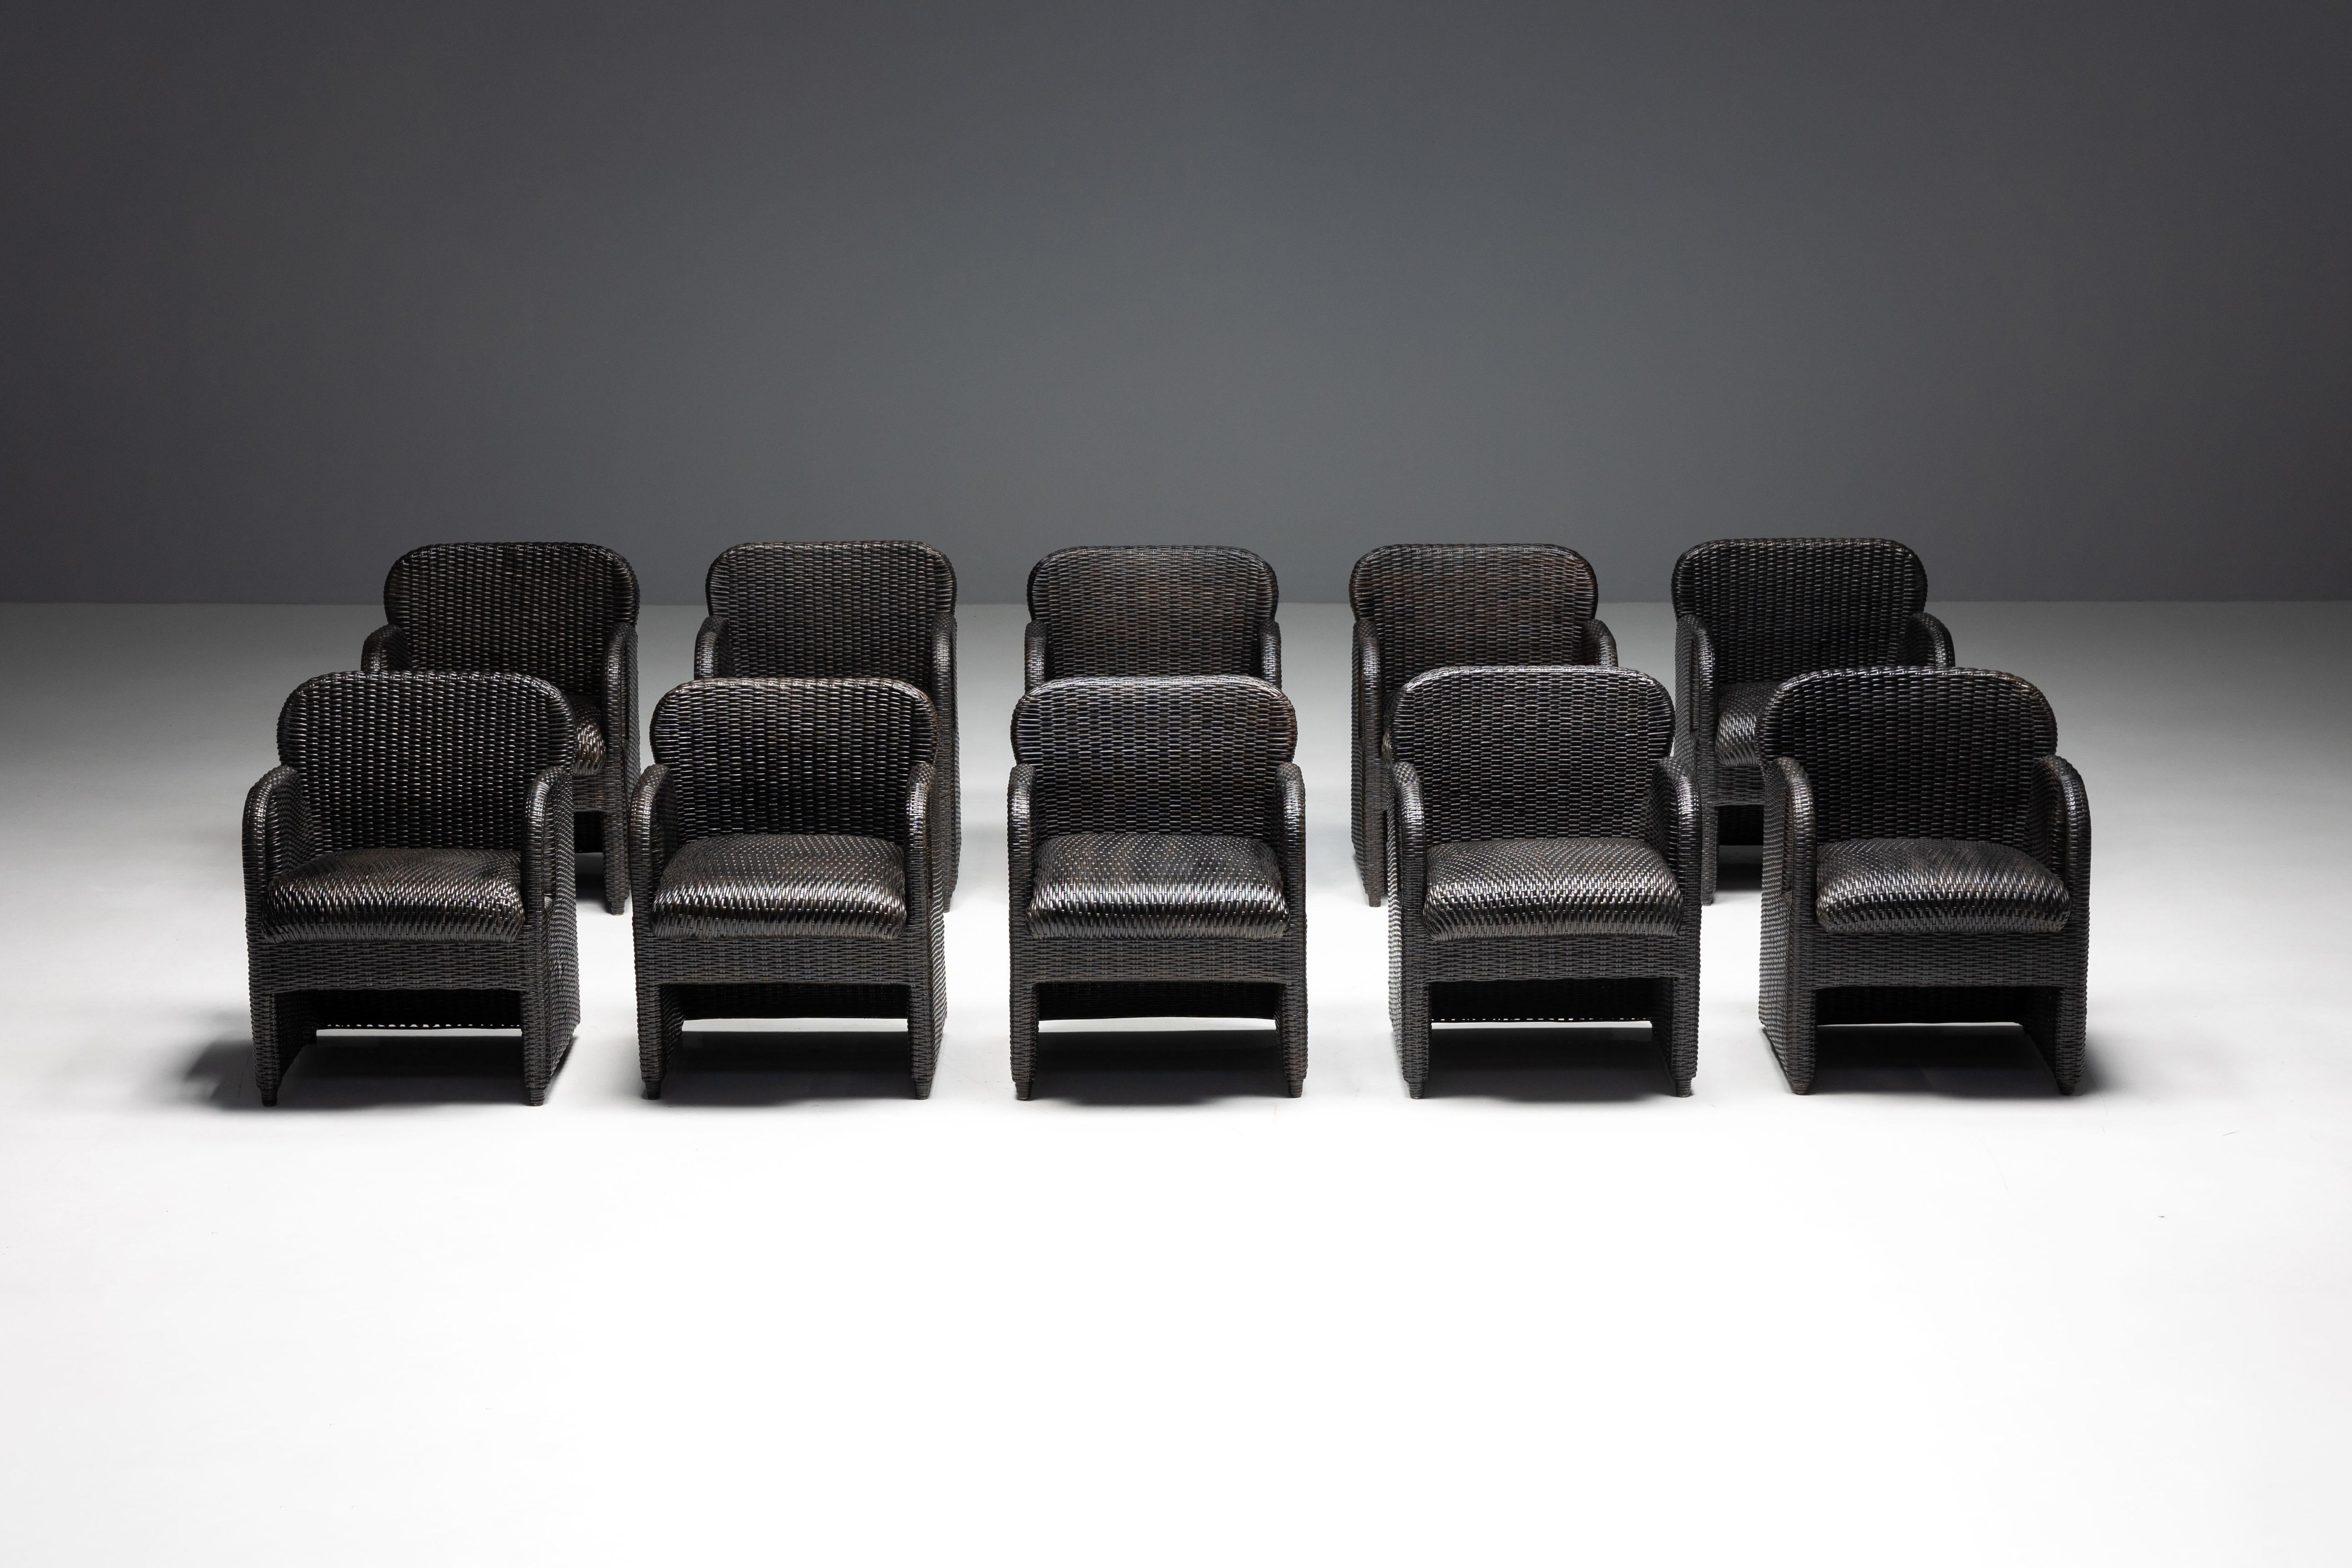 Sessel 'Tlinkit', das ikonische Design von Gae Aulenti, hergestellt von Tecno. Diese in den 1990er Jahren in Varedo, Italien, hergestellten Sessel haben eine raffinierte Ästhetik mit einer schlanken, schwarzen Rattanstruktur, die elegant mit